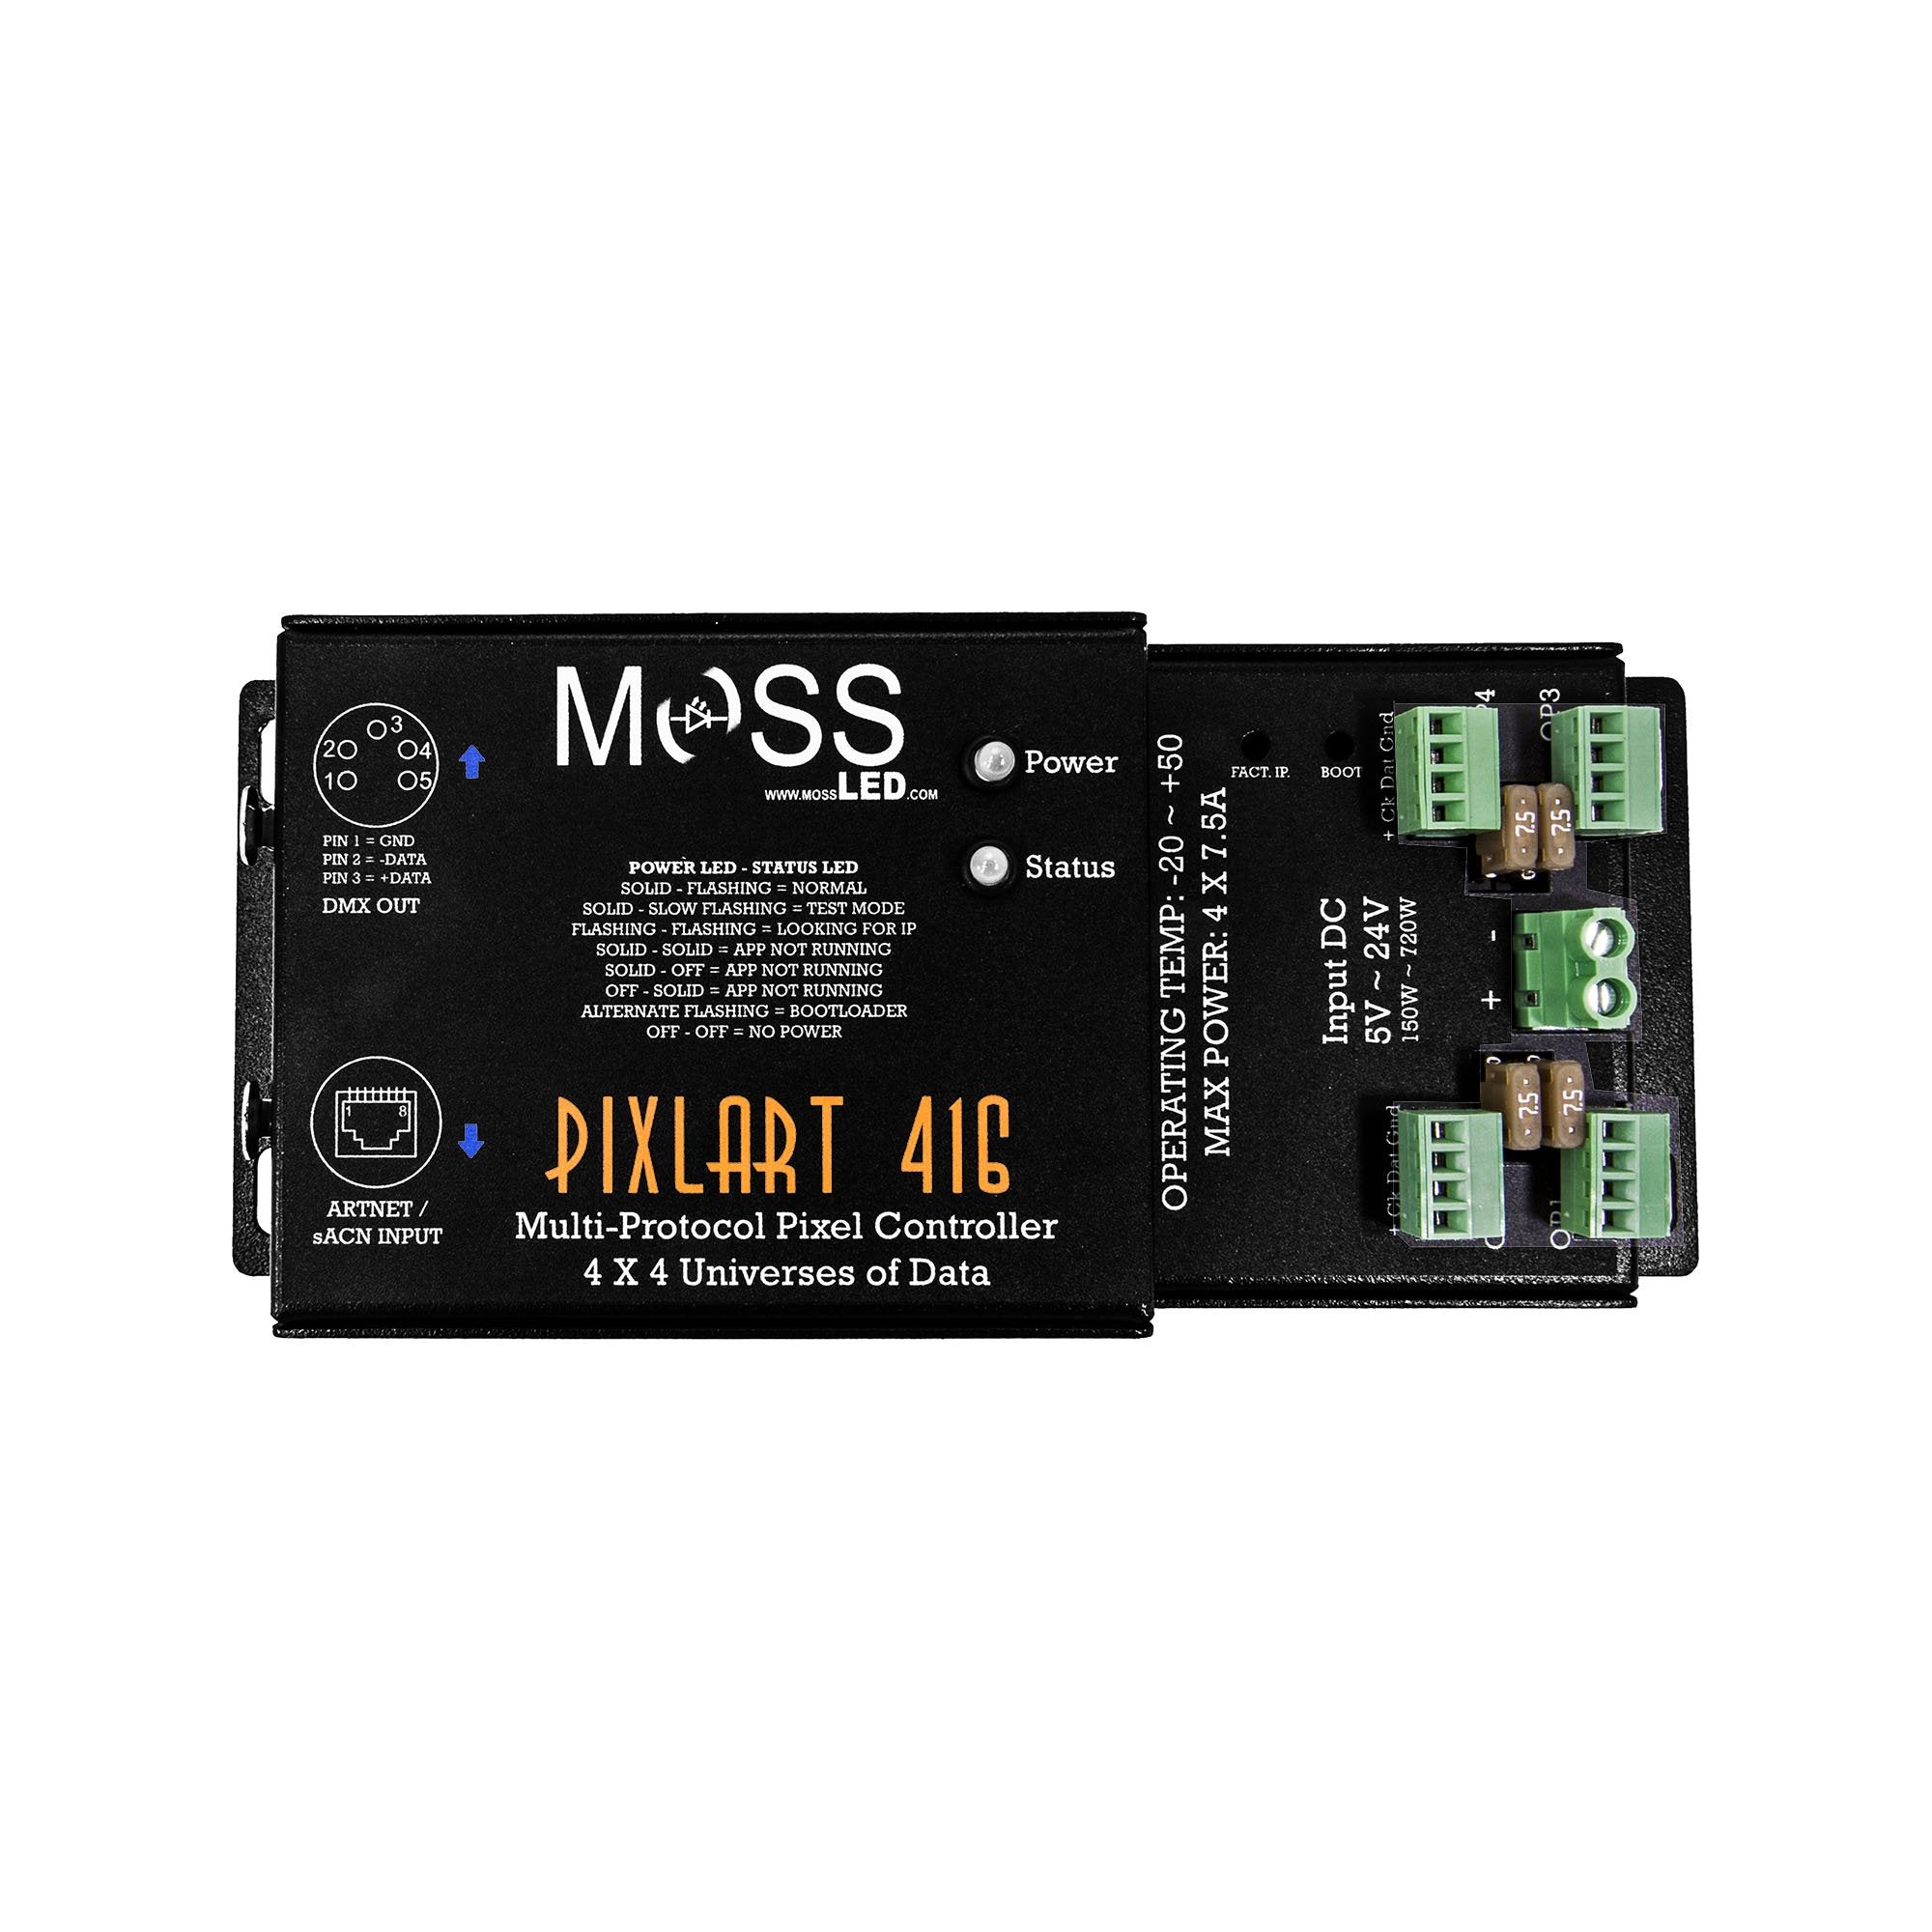 PixlArt 416 - Moss LED